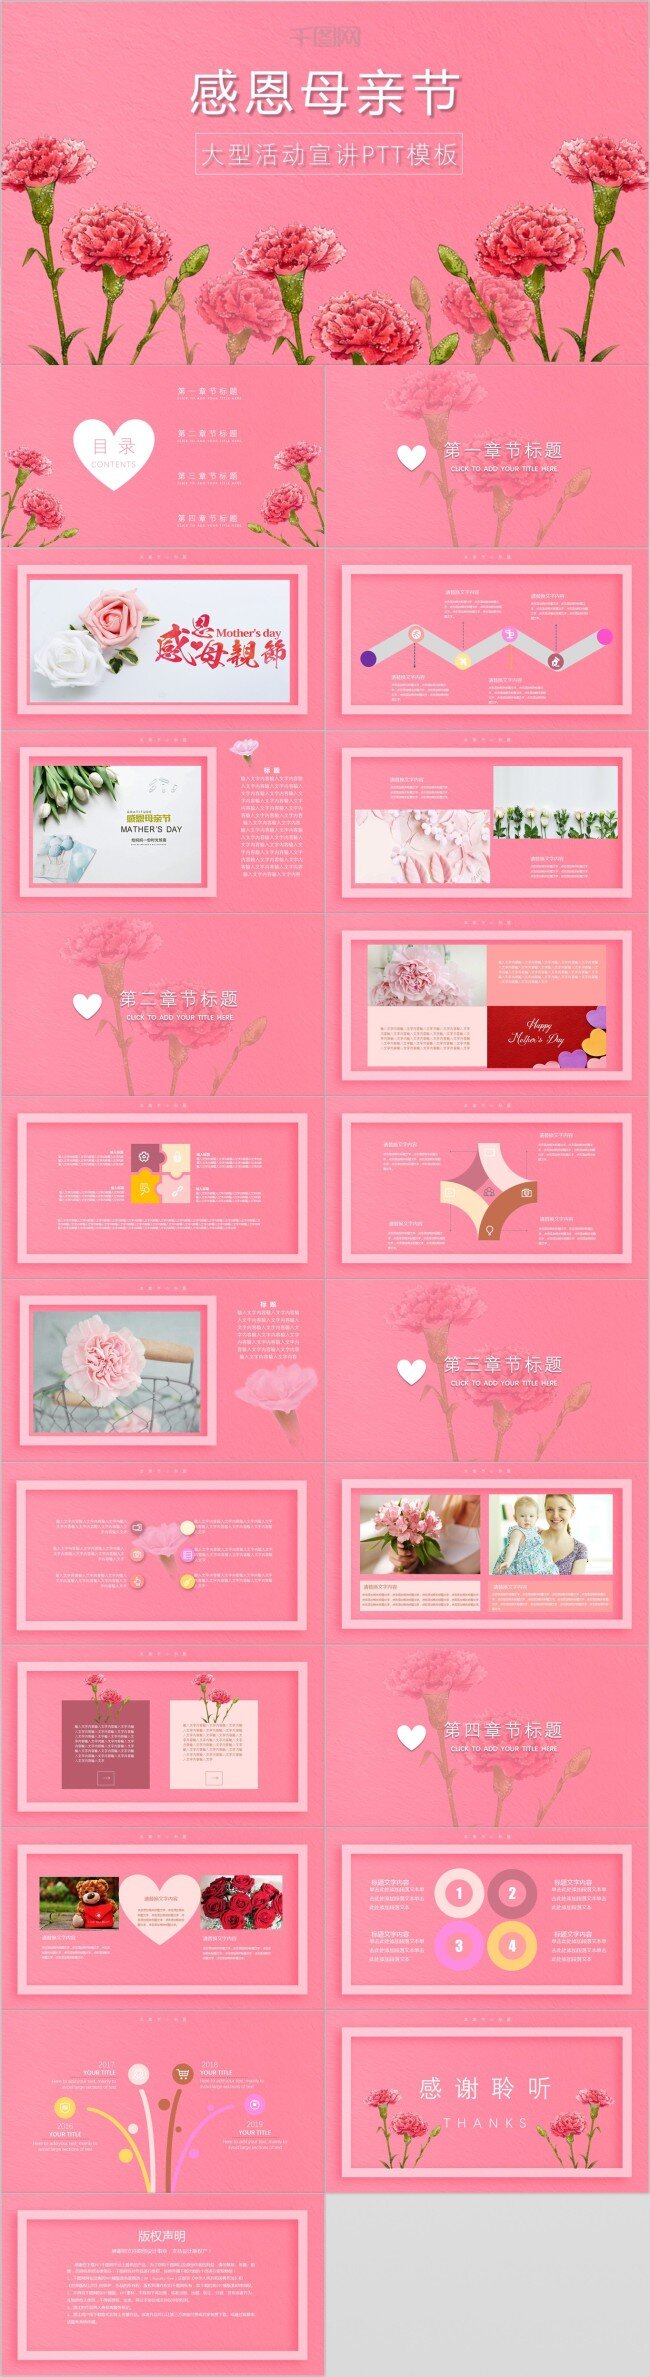 感恩 母亲节 粉色 康乃馨 大型活动 宣导 模板 粉红色 浪漫 文艺 唯美 风 图文并茂 图表模板 活动策划 活动 宣传